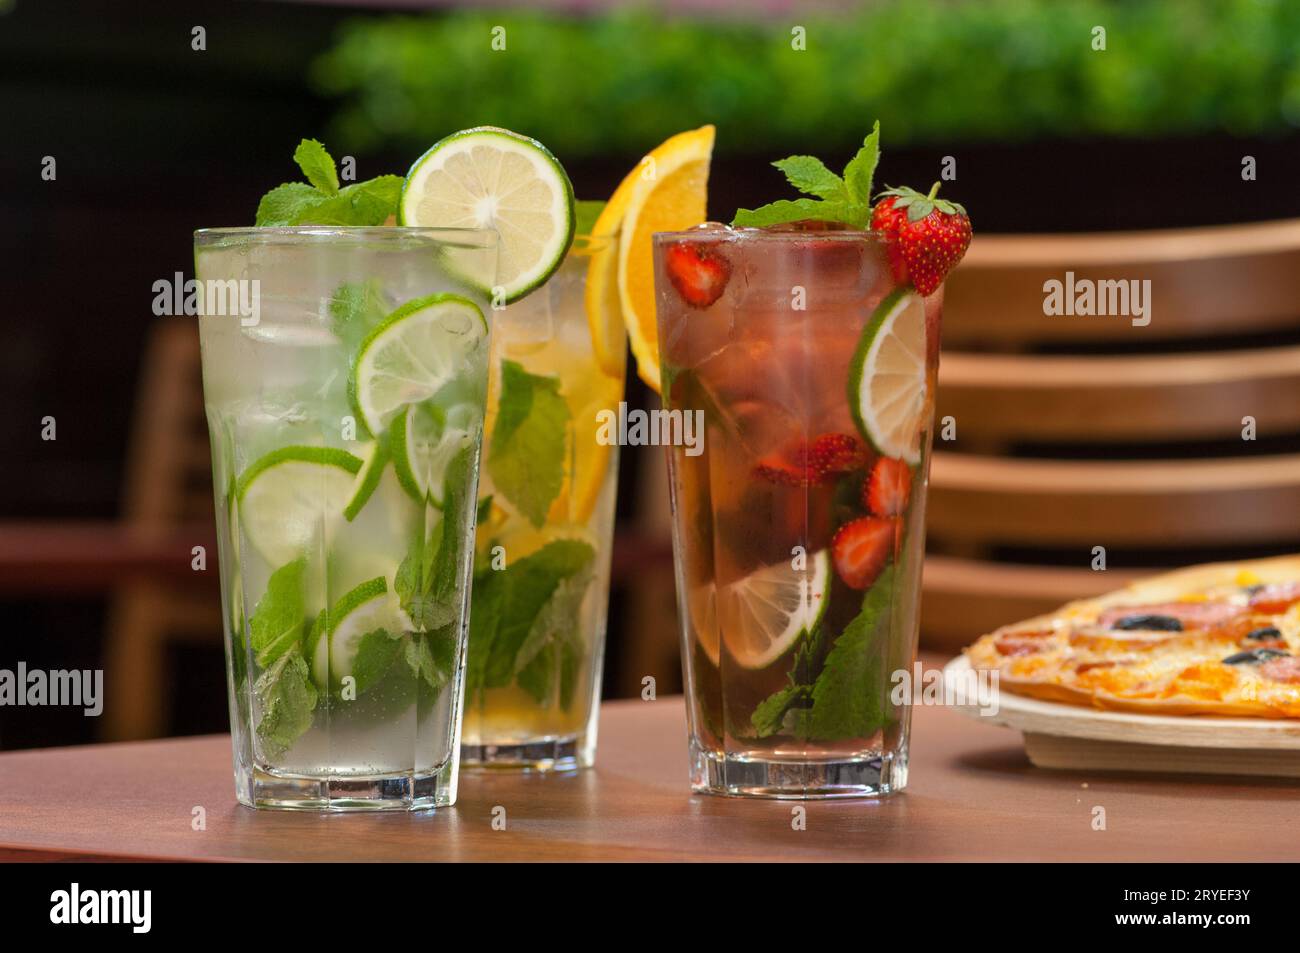 Bevanda fredda con agrumi sul tavolo Foto Stock